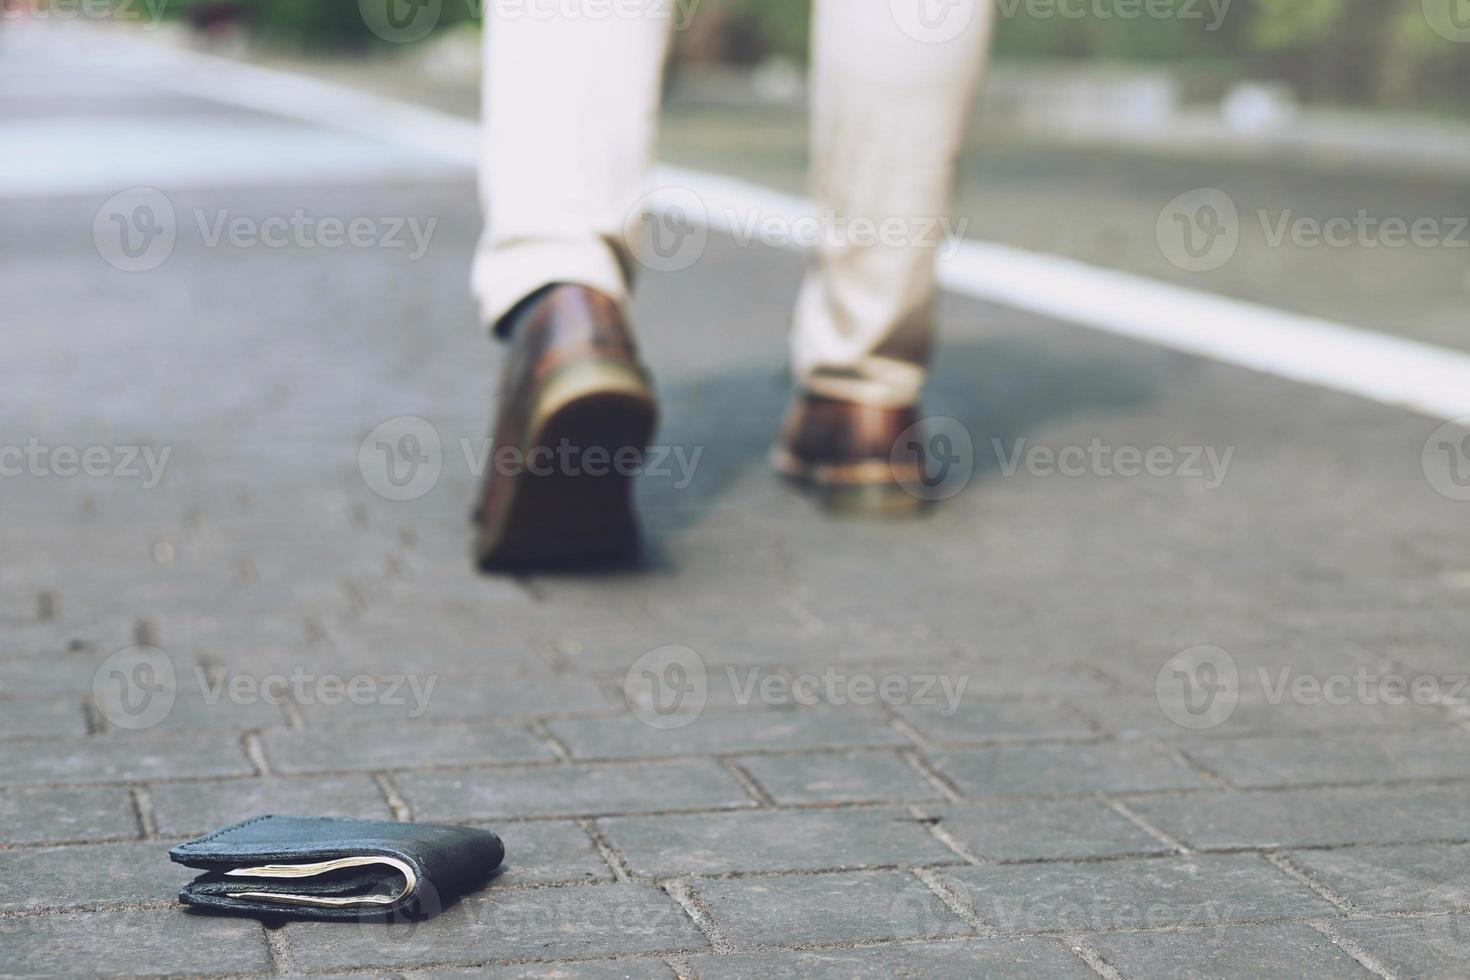 l'homme d'affaires avait perdu un portefeuille en cuir avec de l'argent dans la rue. gros plan du portefeuille allongé sur le trottoir pendant le trajet au travail. laisser de la place pour écrire des messages. photo